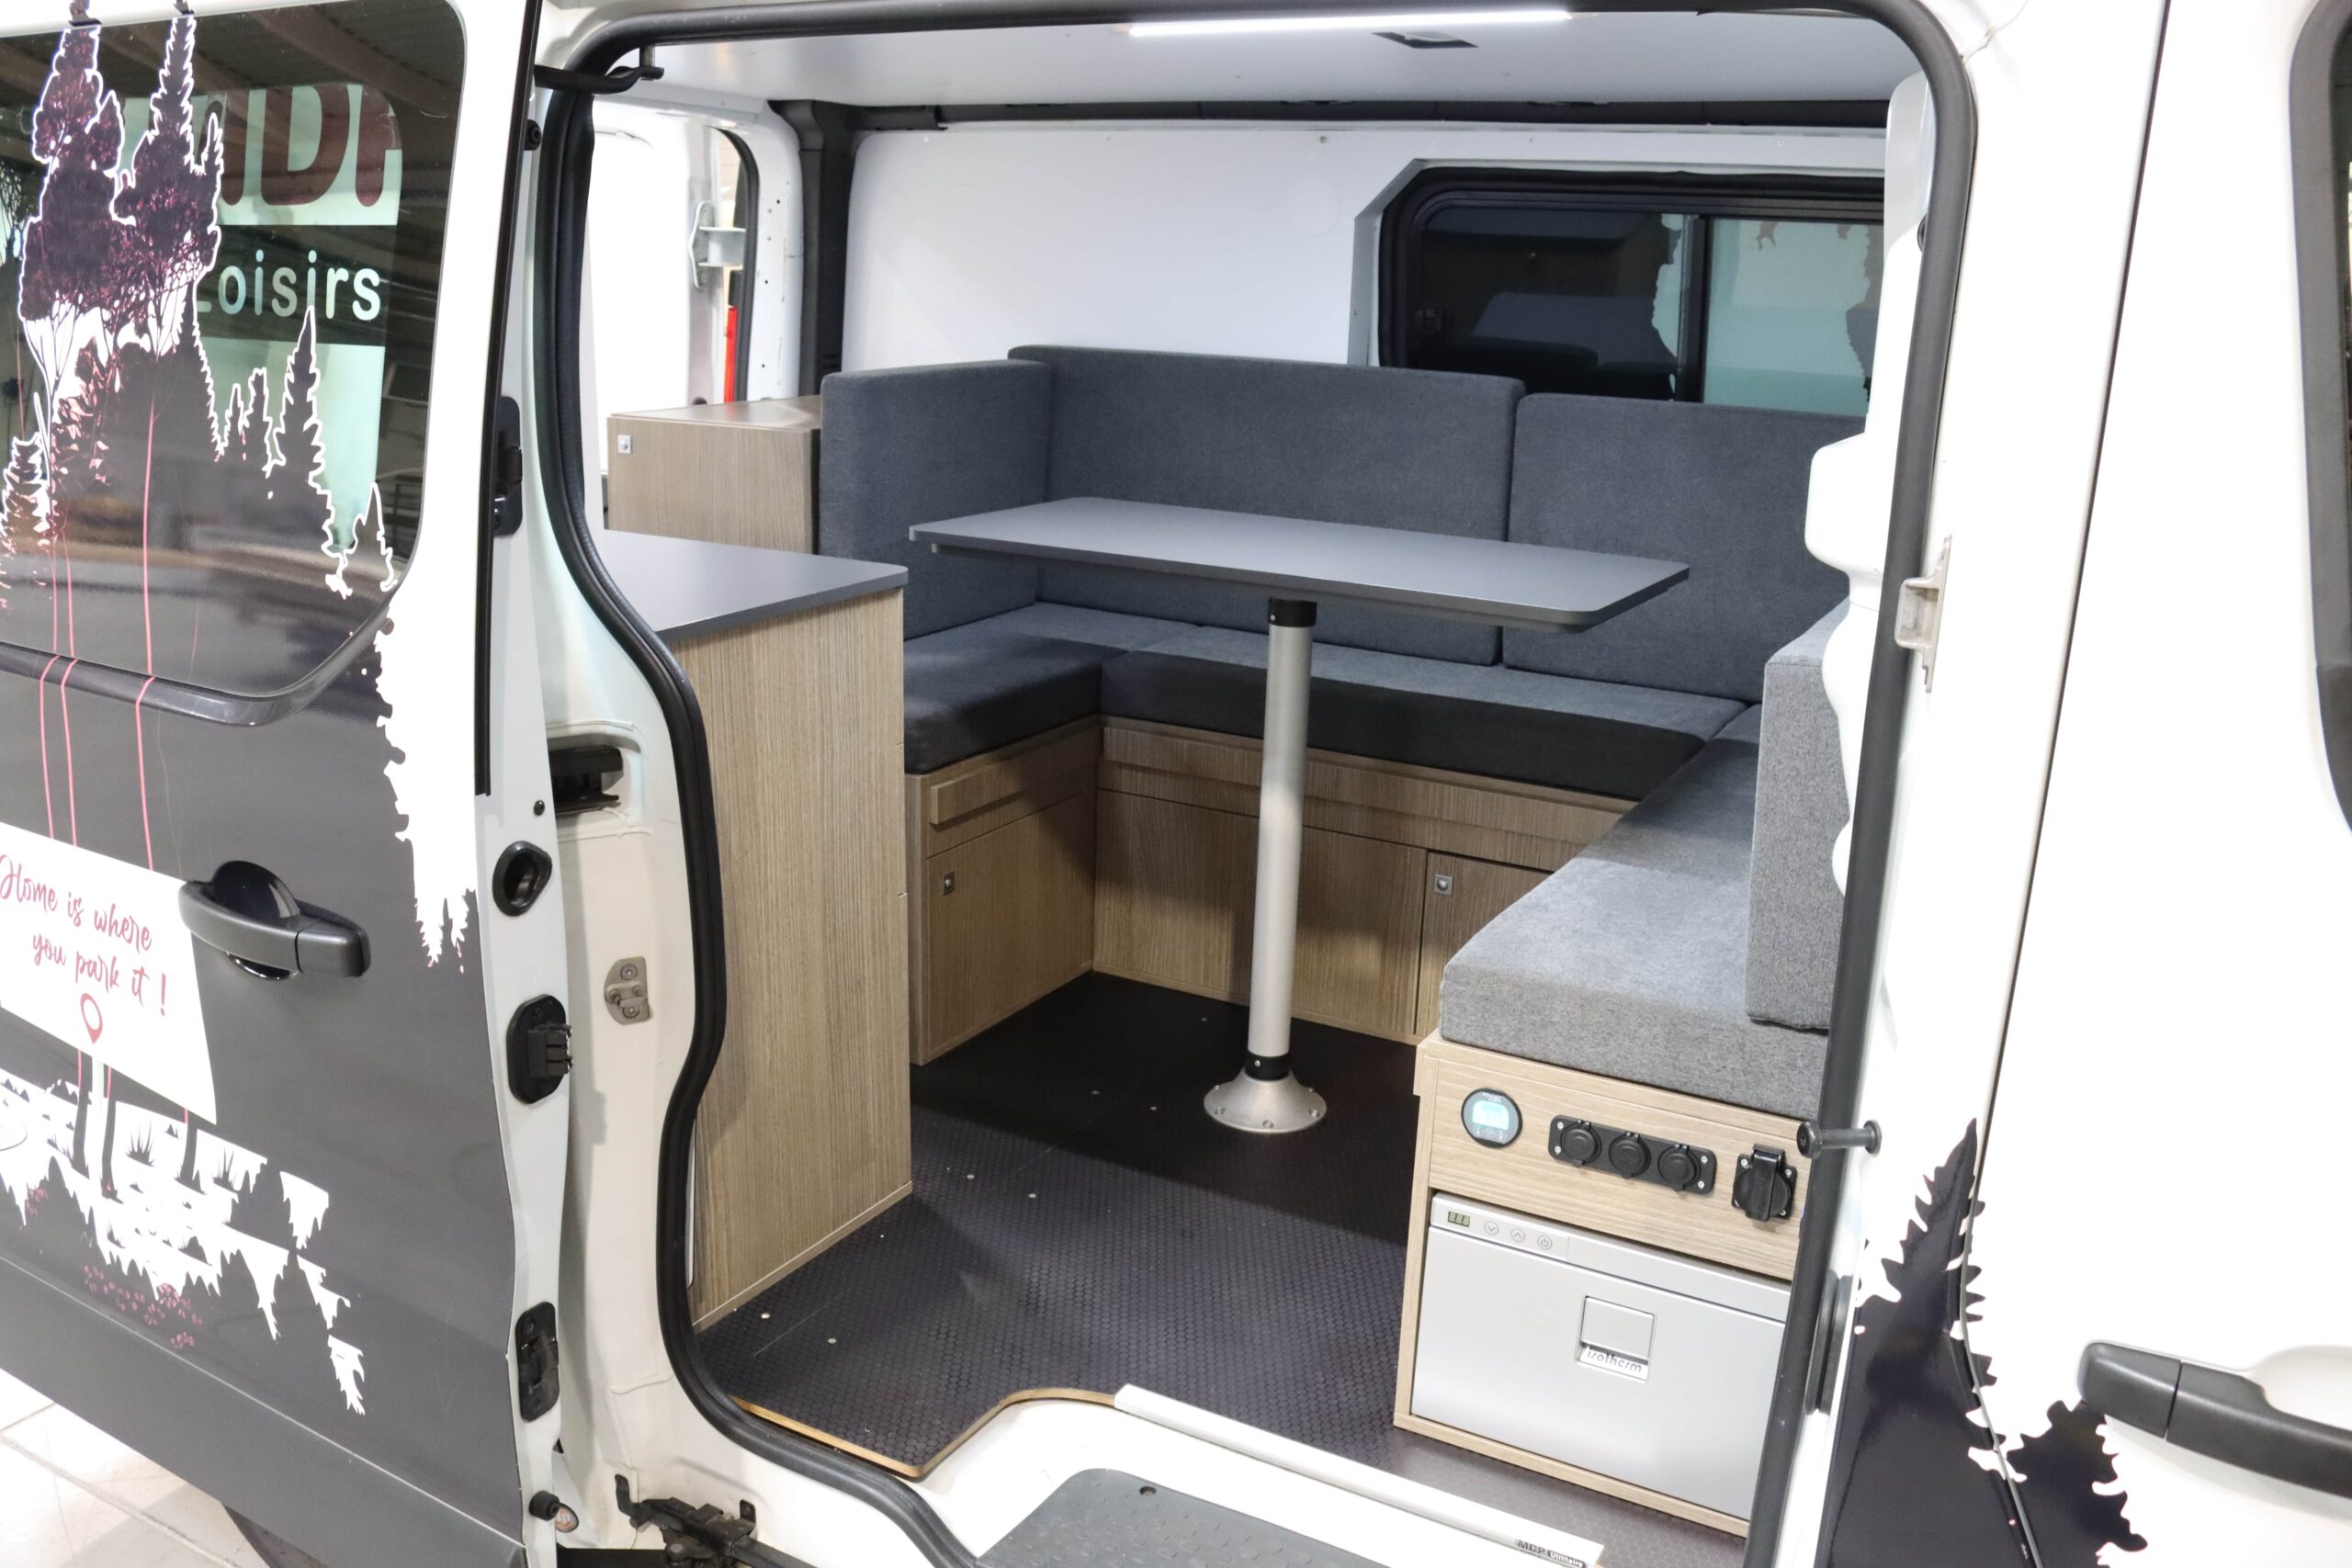 Kit aménagement van - tous les fournisseurs, véhicules compatibles